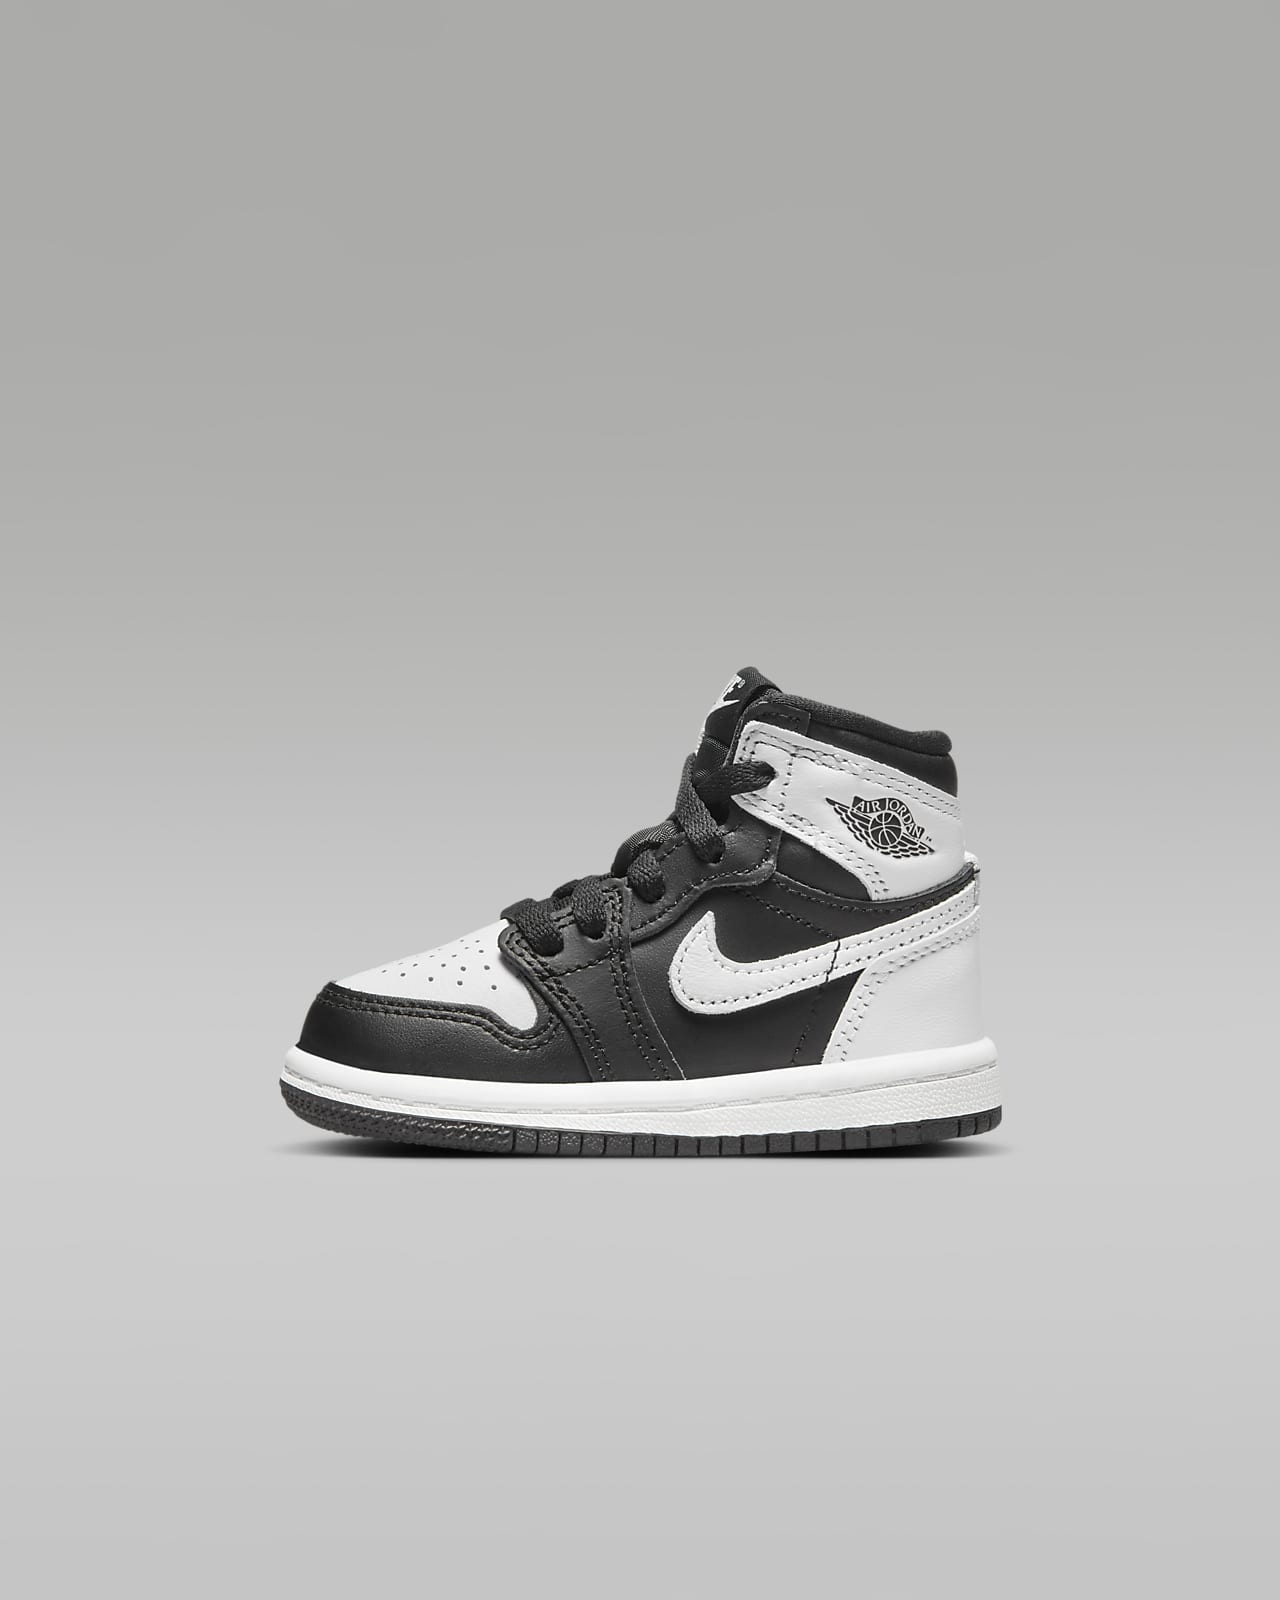 Nike Air Jordan 1 Retro sneakers in gray, black and white